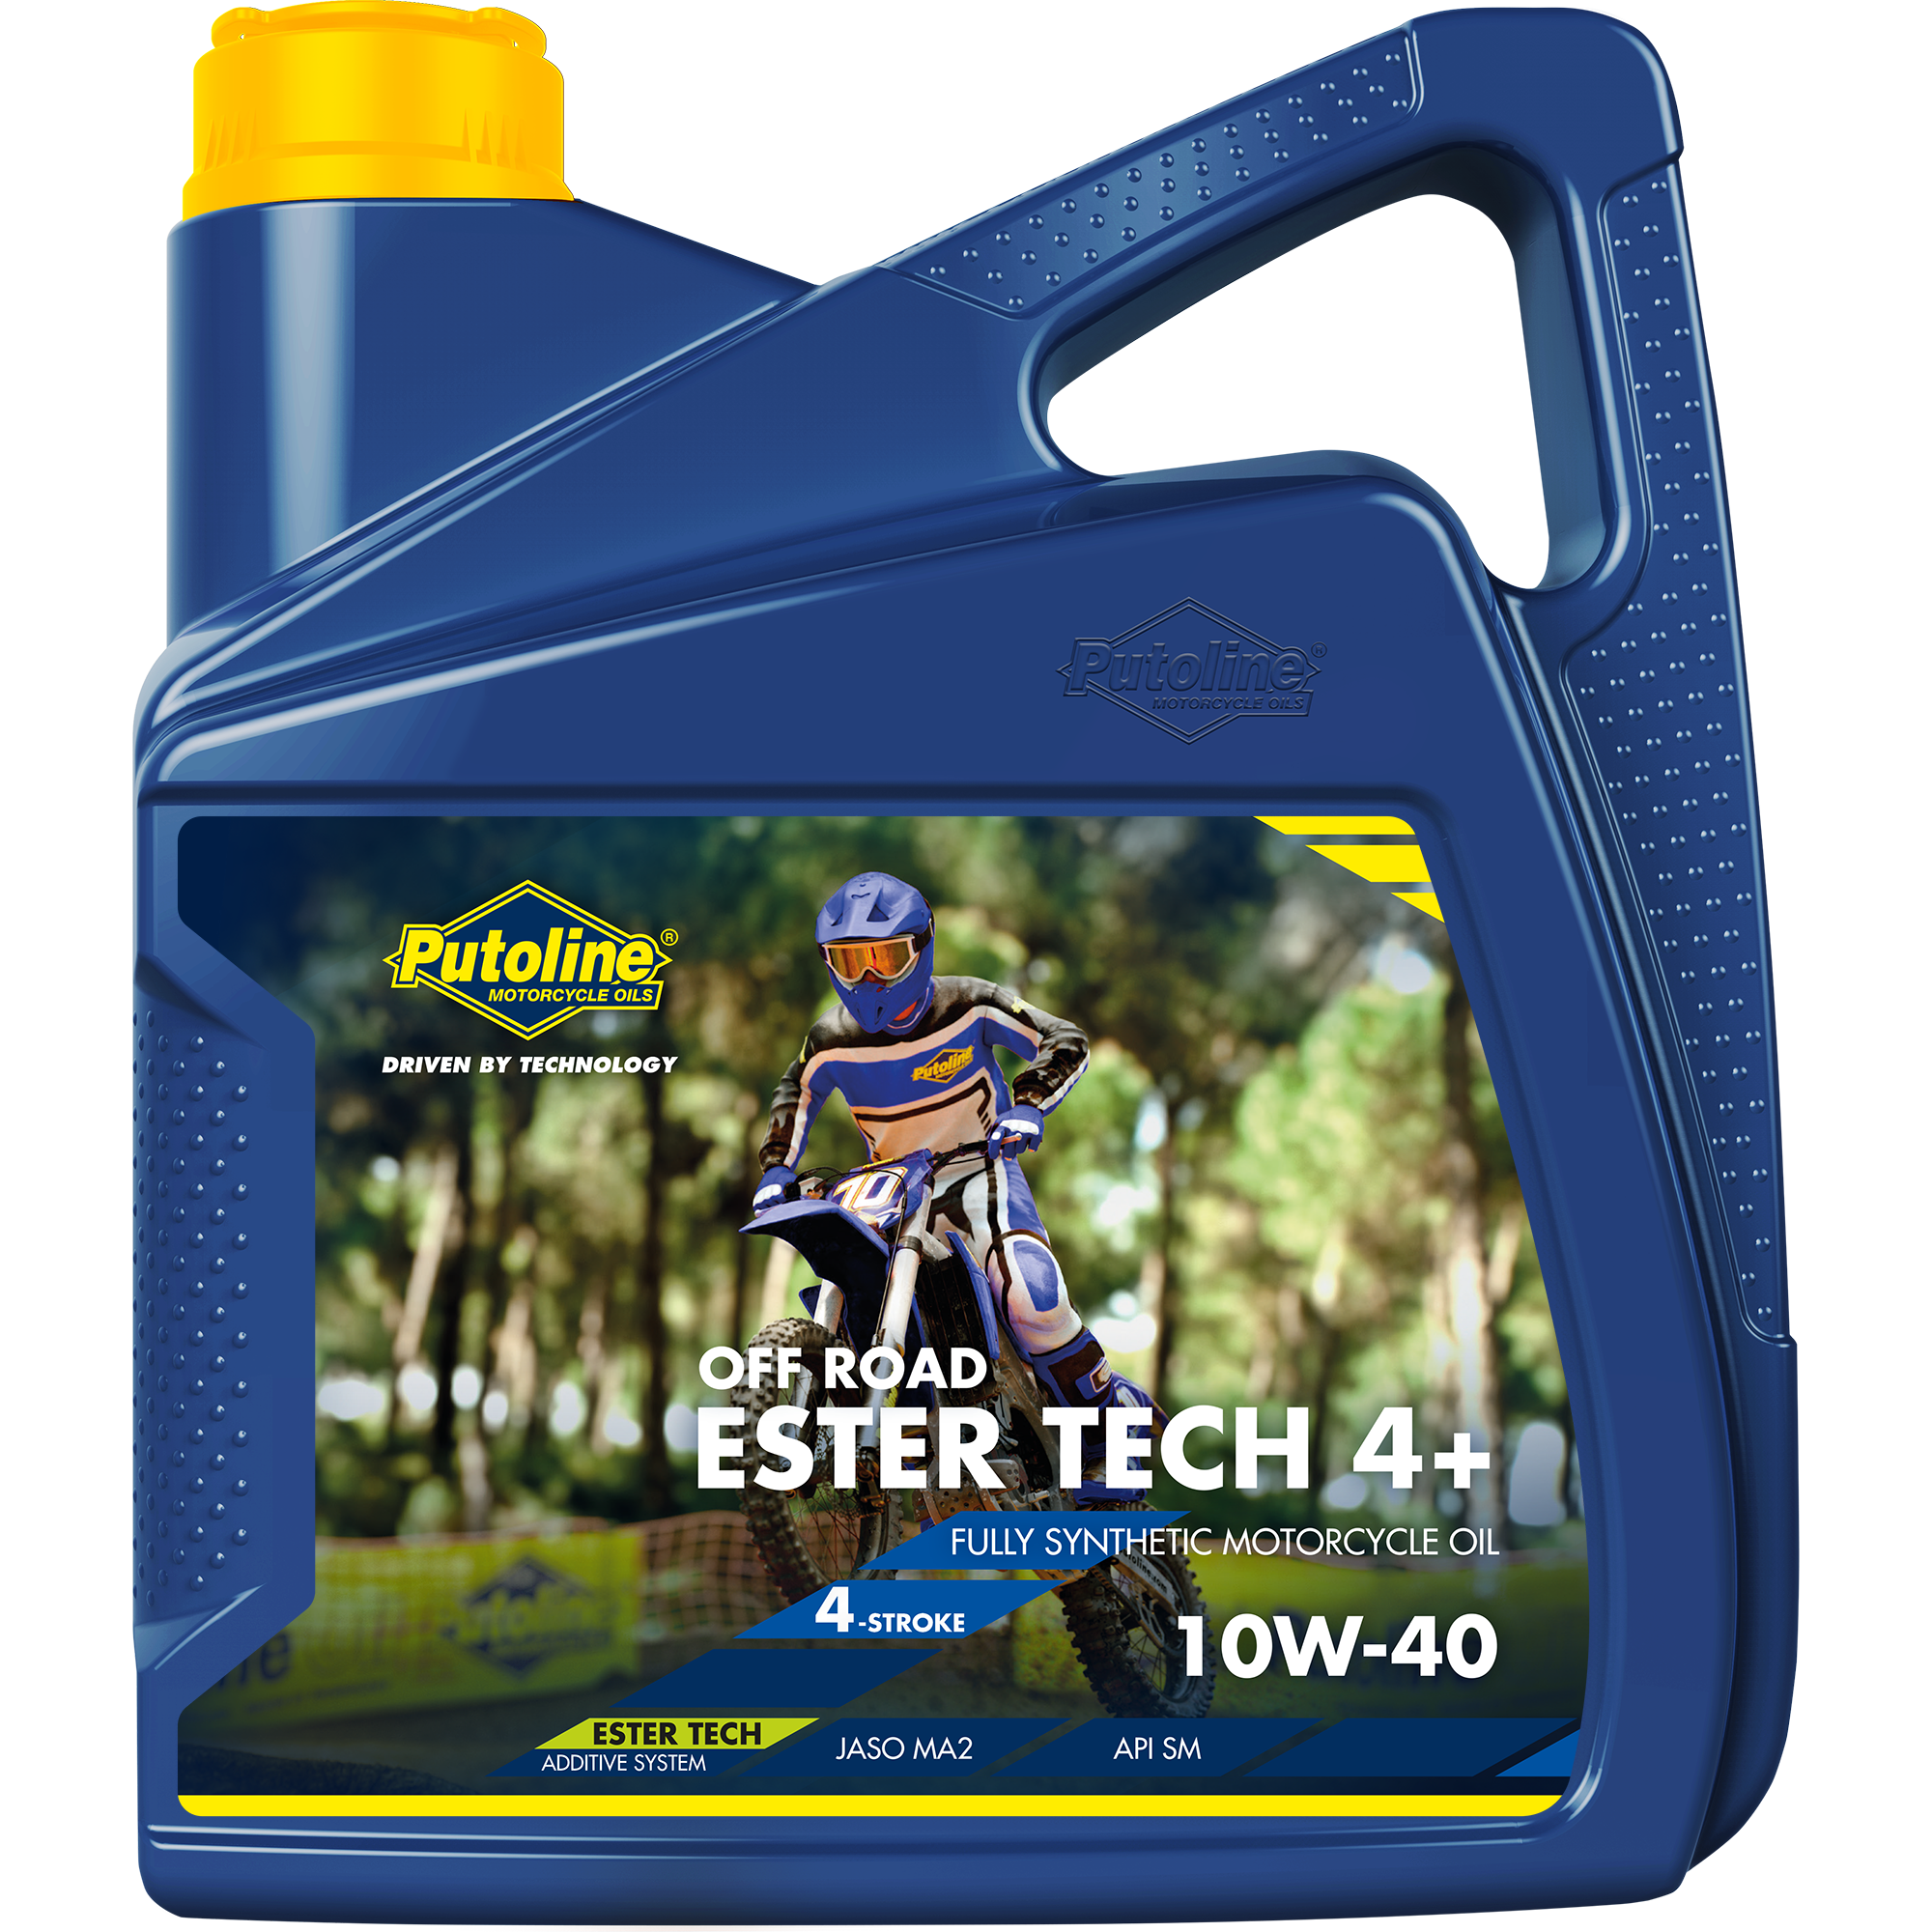 Putoline Ester Tech Off Road 4+ 10W-40, 4 x 4 lt detail 2